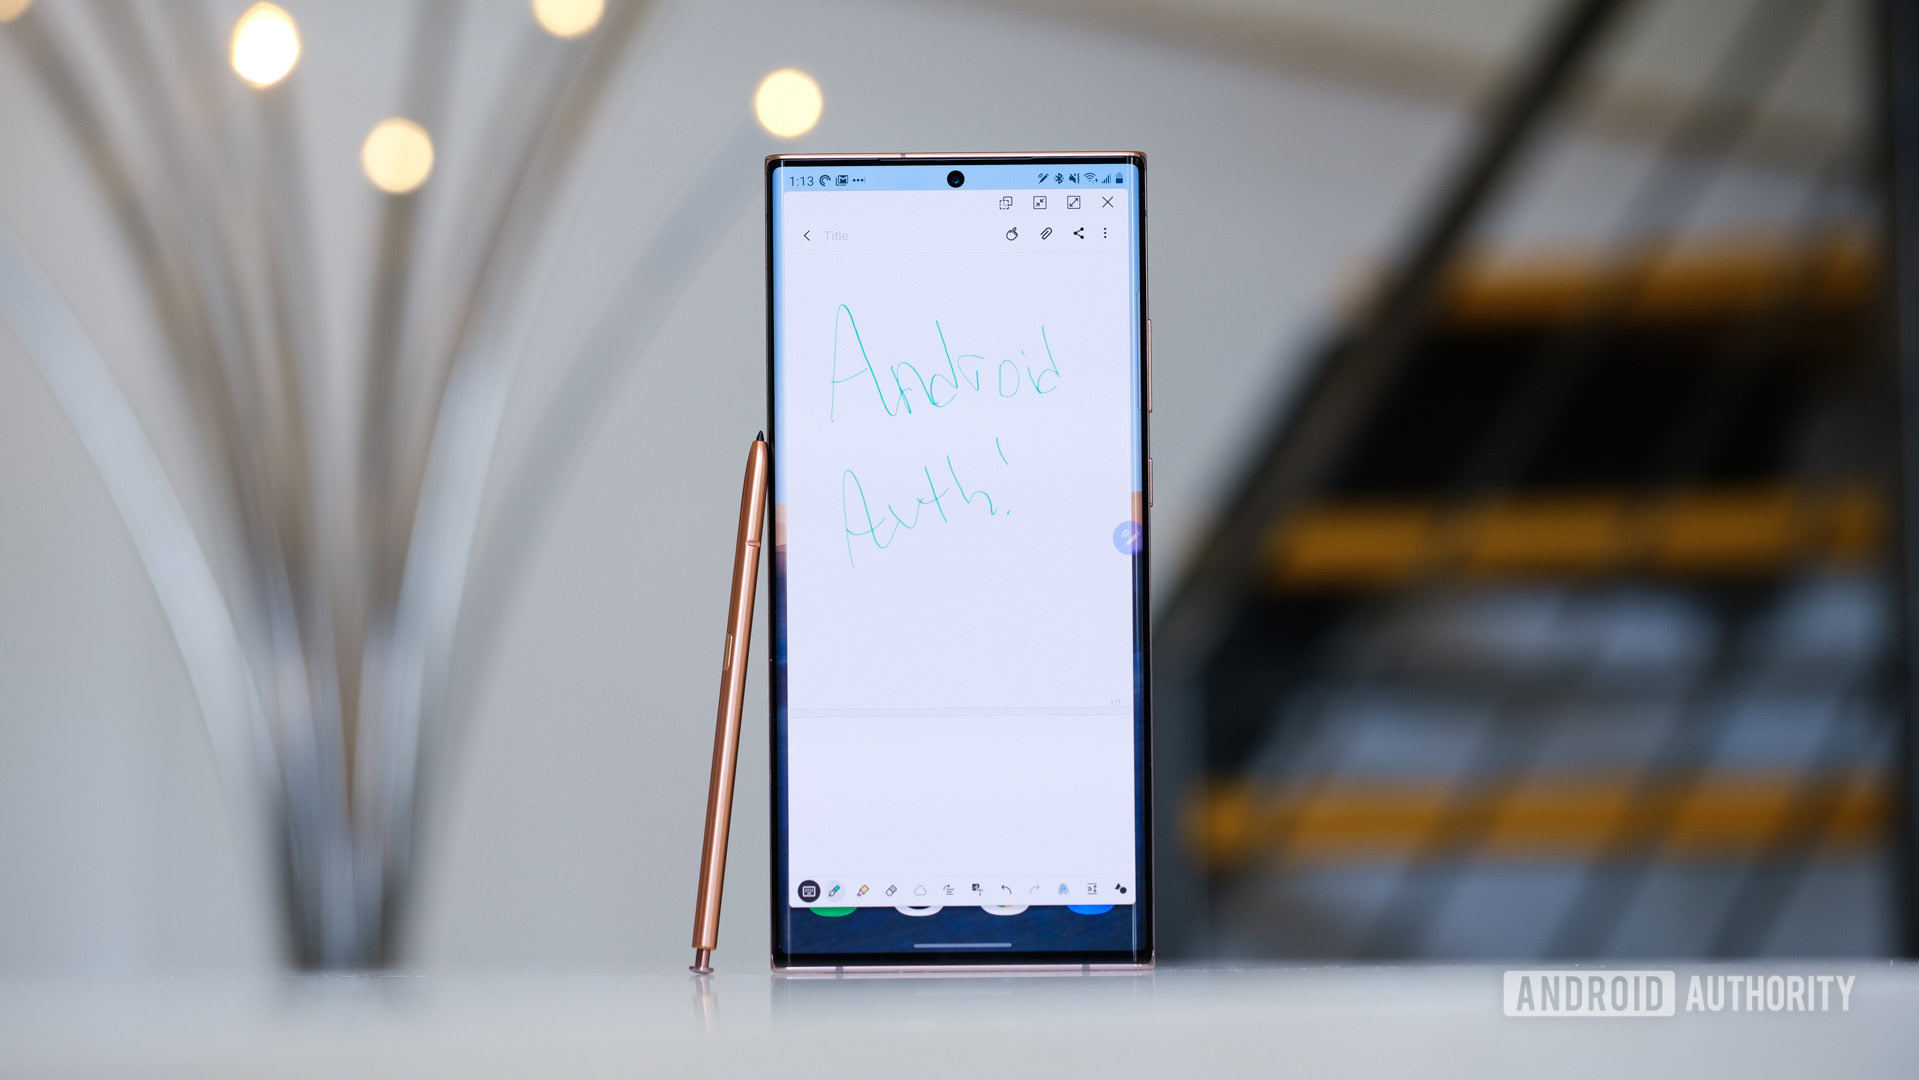 Tìm hiểu về lịch sử dòng Galaxy Note của Samsung là nhìn vào sự tiến hóa đáng kể của công nghệ và sáng tạo. Từ những tính năng đầu tiên của S Pen, đến khả năng chụp ảnh chuyên nghiệp, đến hiệu suất làm việc chưa từng có, hãy khám phá những điểm nổi bật về dòng sản phẩm này và cảm nhận sự khác biệt.